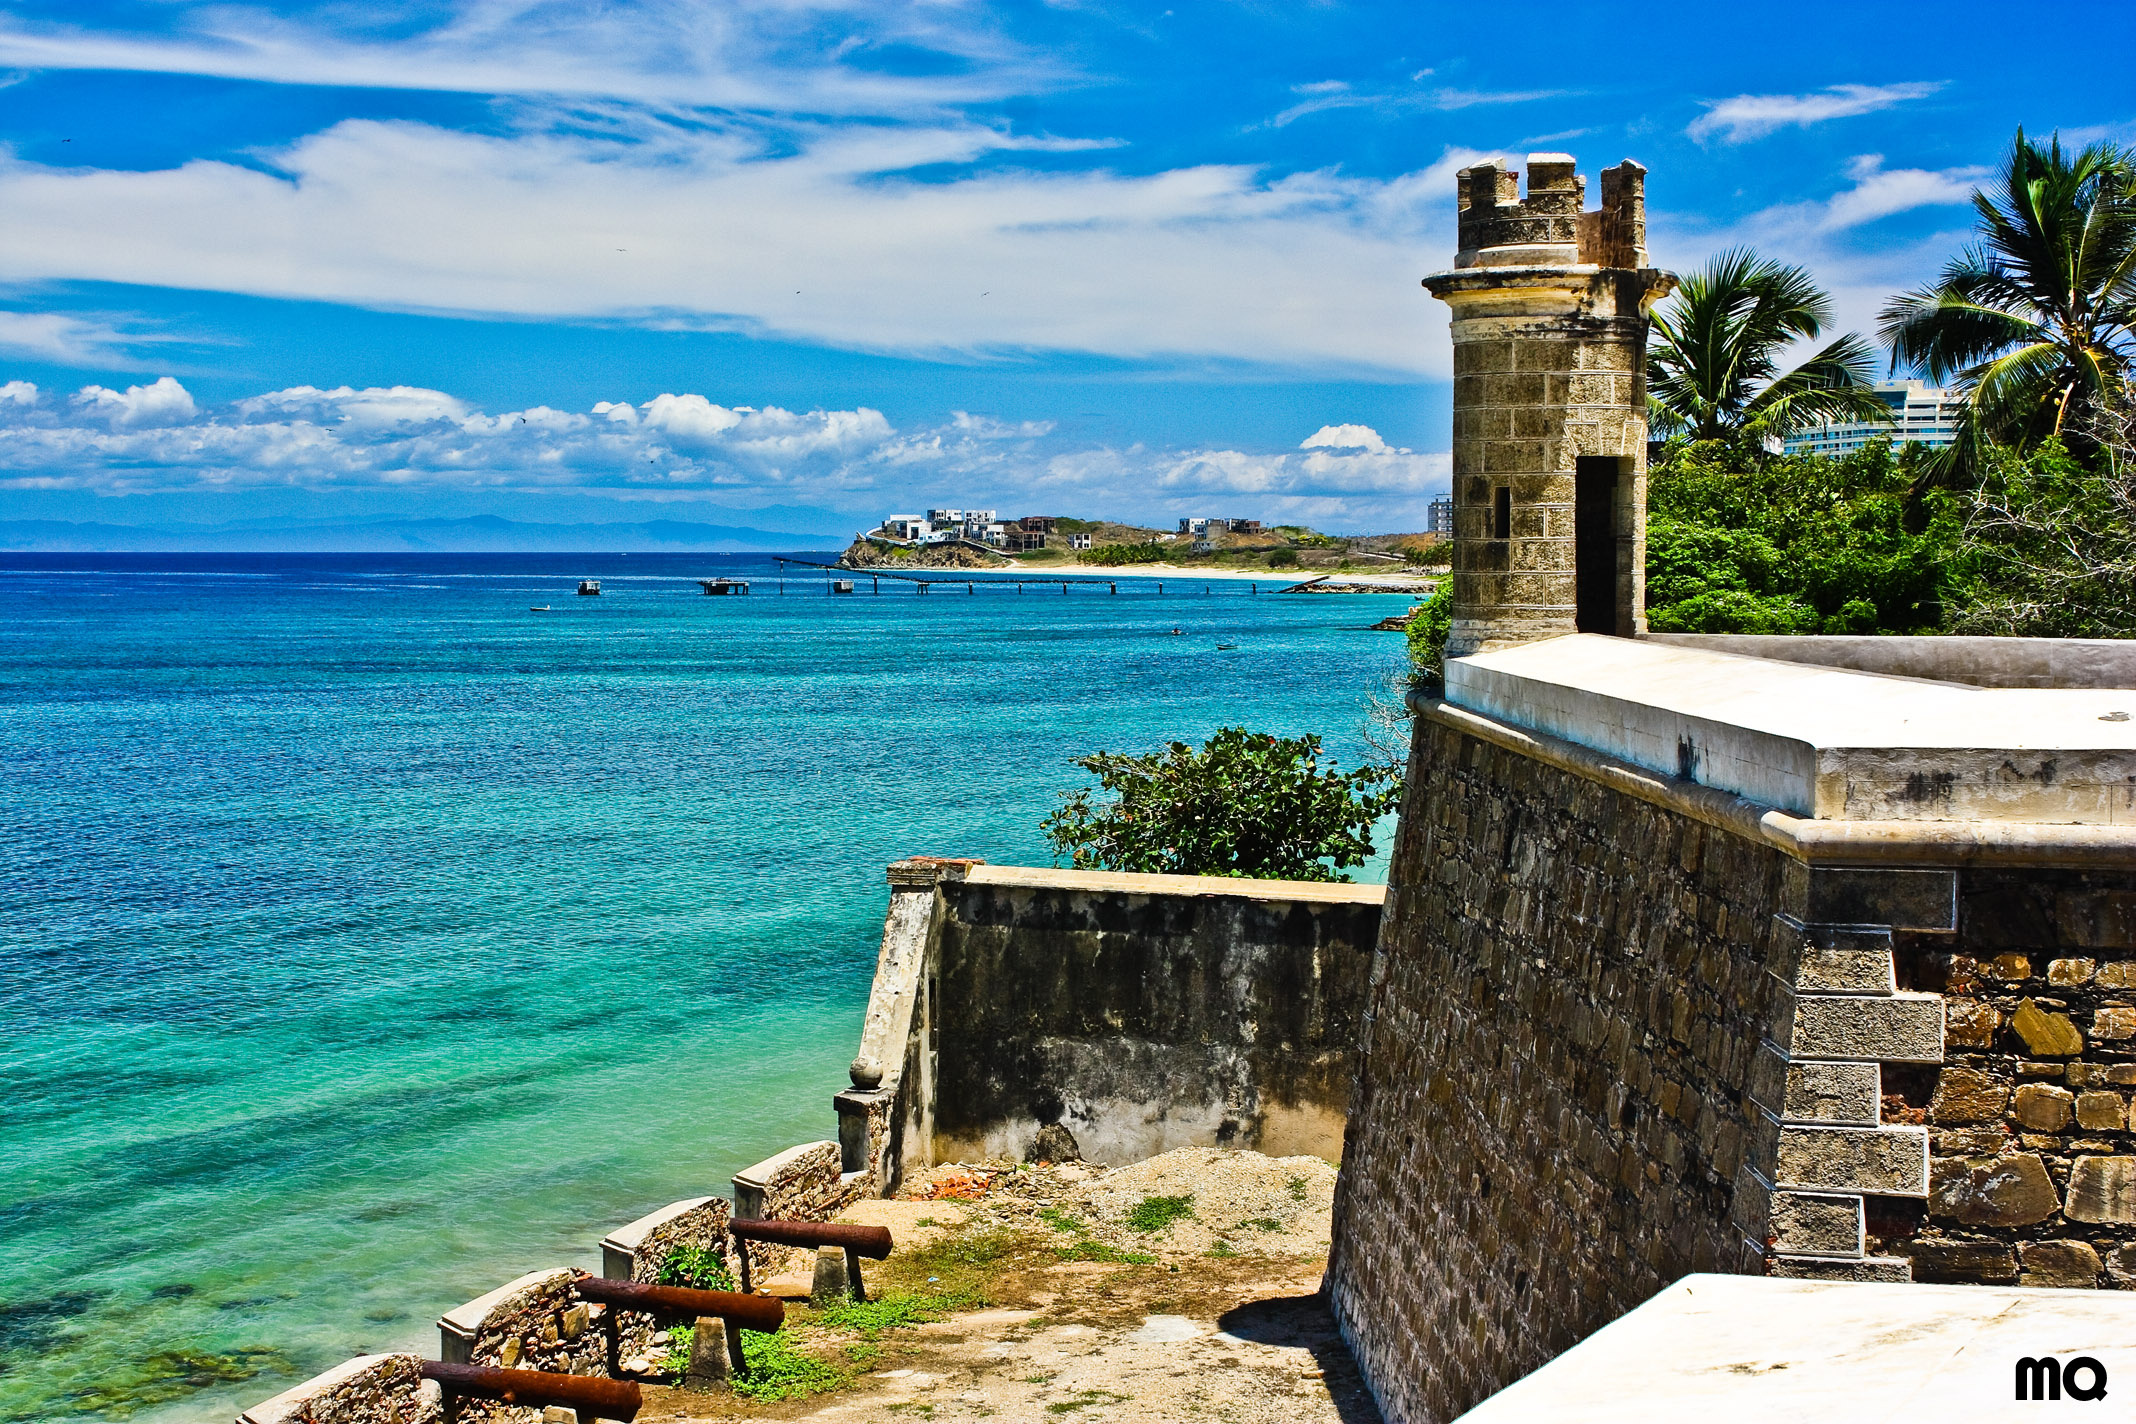 Margarita Island (Venezuela): Pampatar Castle, San Carlos de Borromeo Fortress, Port Royal Mampatare. 2140x1430 HD Wallpaper.